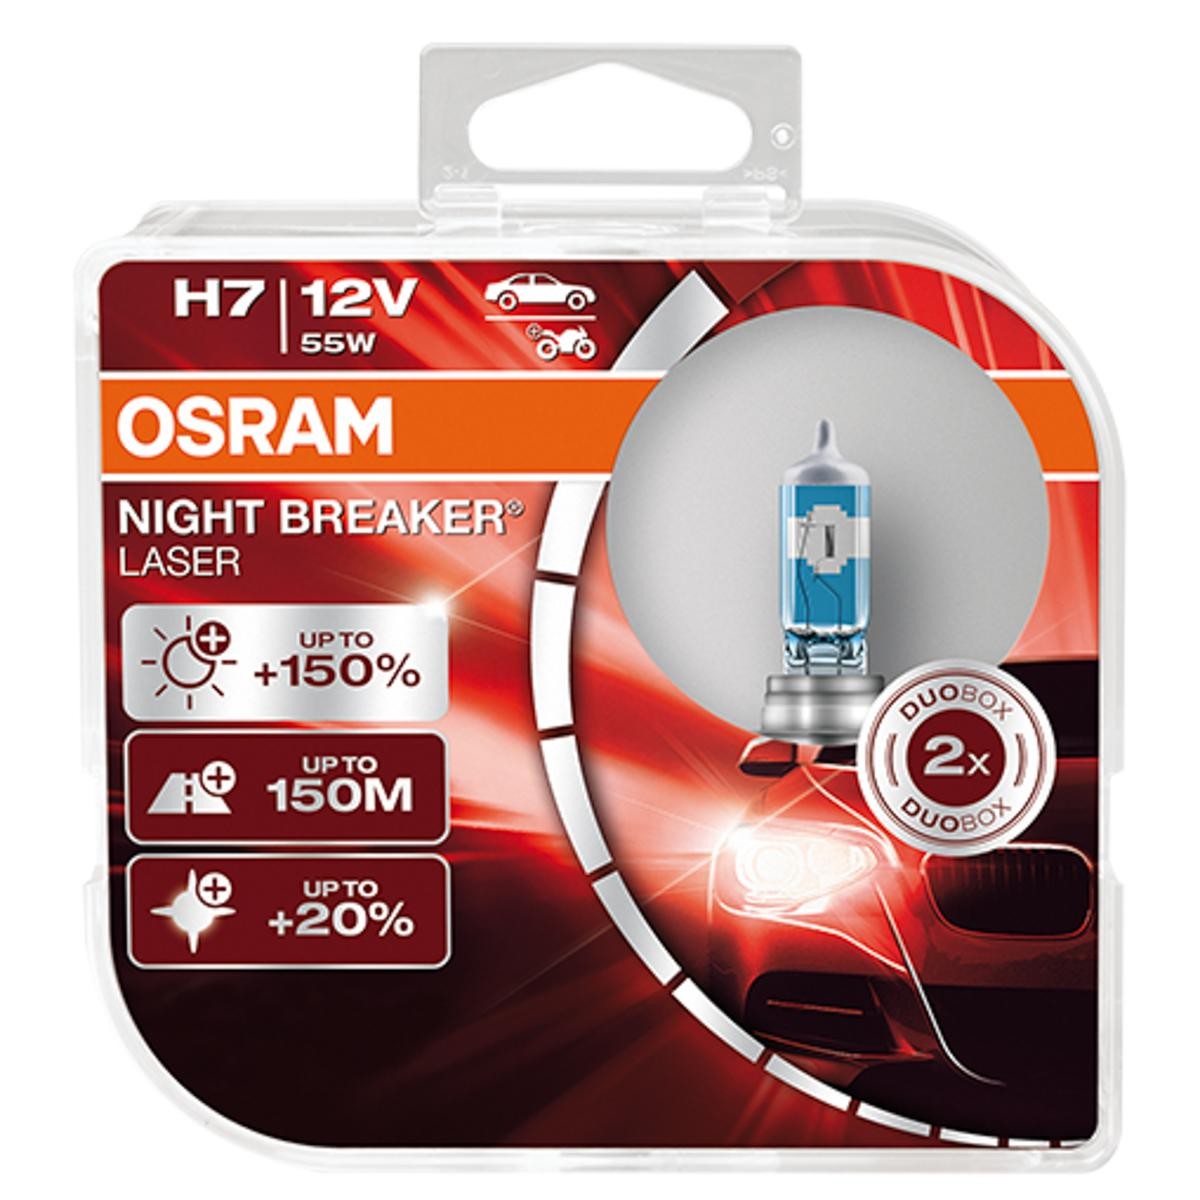 OSRAM NIGHT BREAKER LASER next Generation 64210NL-HCB Bulb, spotlight H7 12V 55W PX26d, 4200K, Halogen